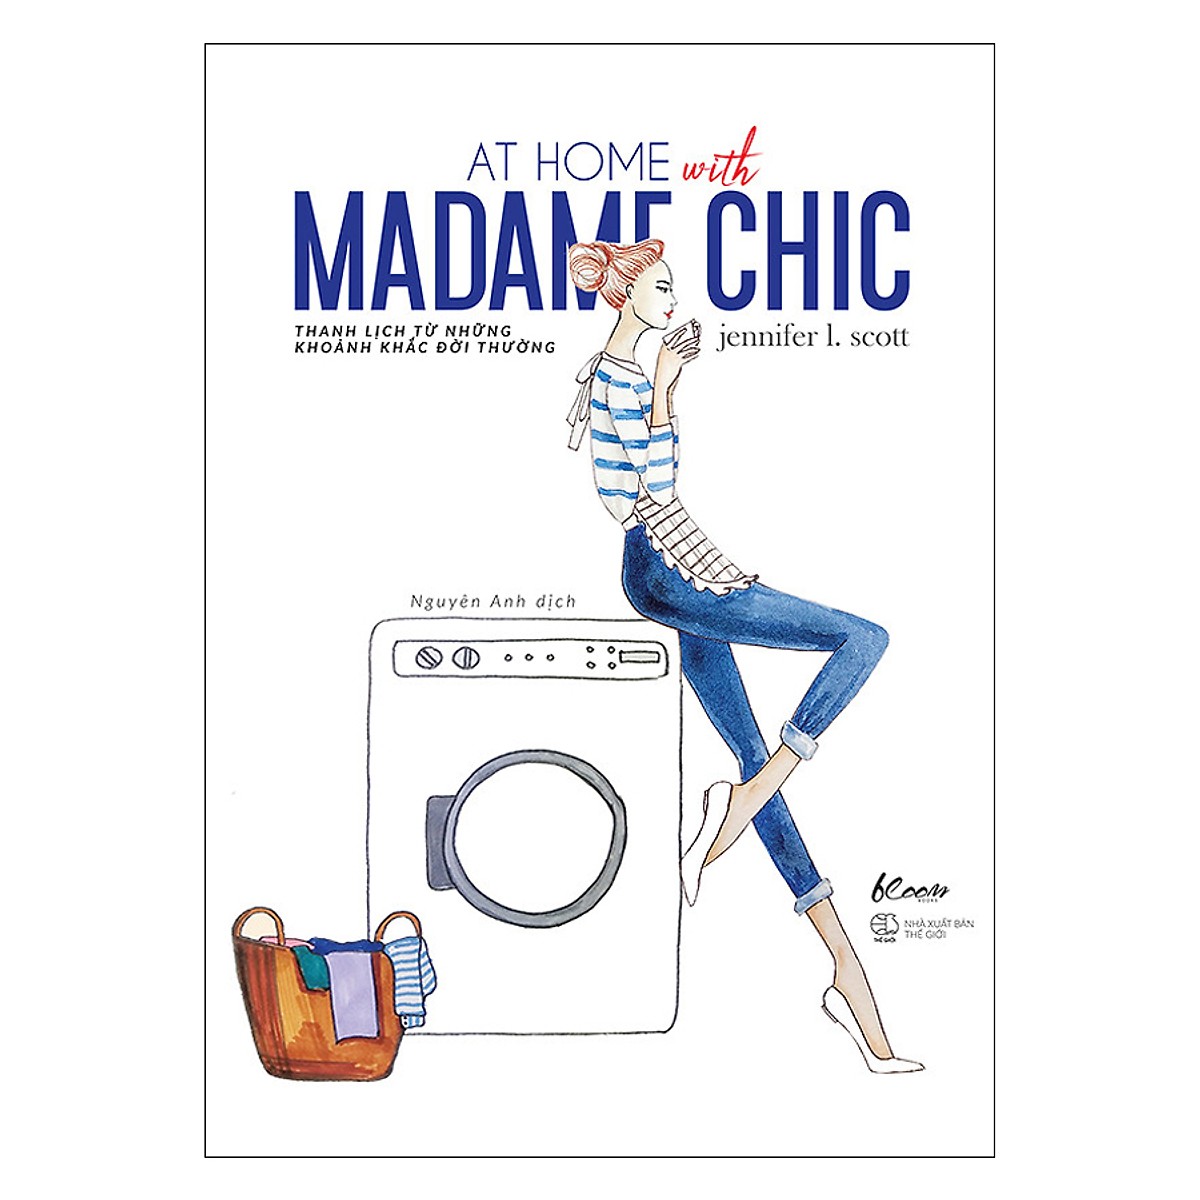 Combo Madame Chic (Trọn Bộ 2 Cuốn) : 20 Bí Mật Sành Điệu từ Madame Chic và At Home With Madame Chic - Thanh Lịch Từ Những Khoảnh Khắc Đời Thường